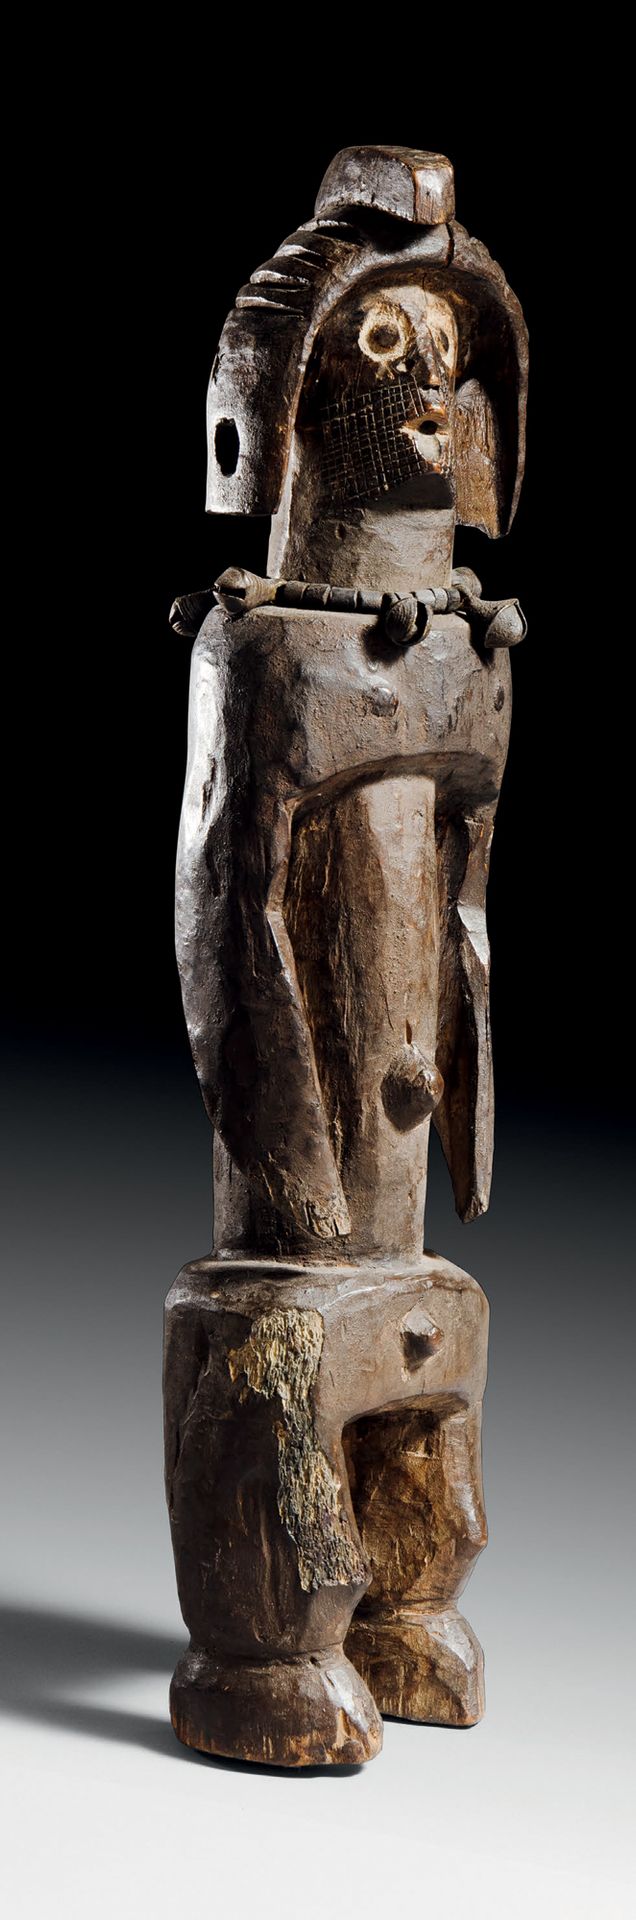 Null Mumuye雕像，尼日利亚
木头
H.60厘米
慕名而来的祖先雕像，以人的造型为特色。这座强大的雕塑围绕着一个圆柱形的躯干，宽阔的肩膀和骨盆从这里出现&hellip;